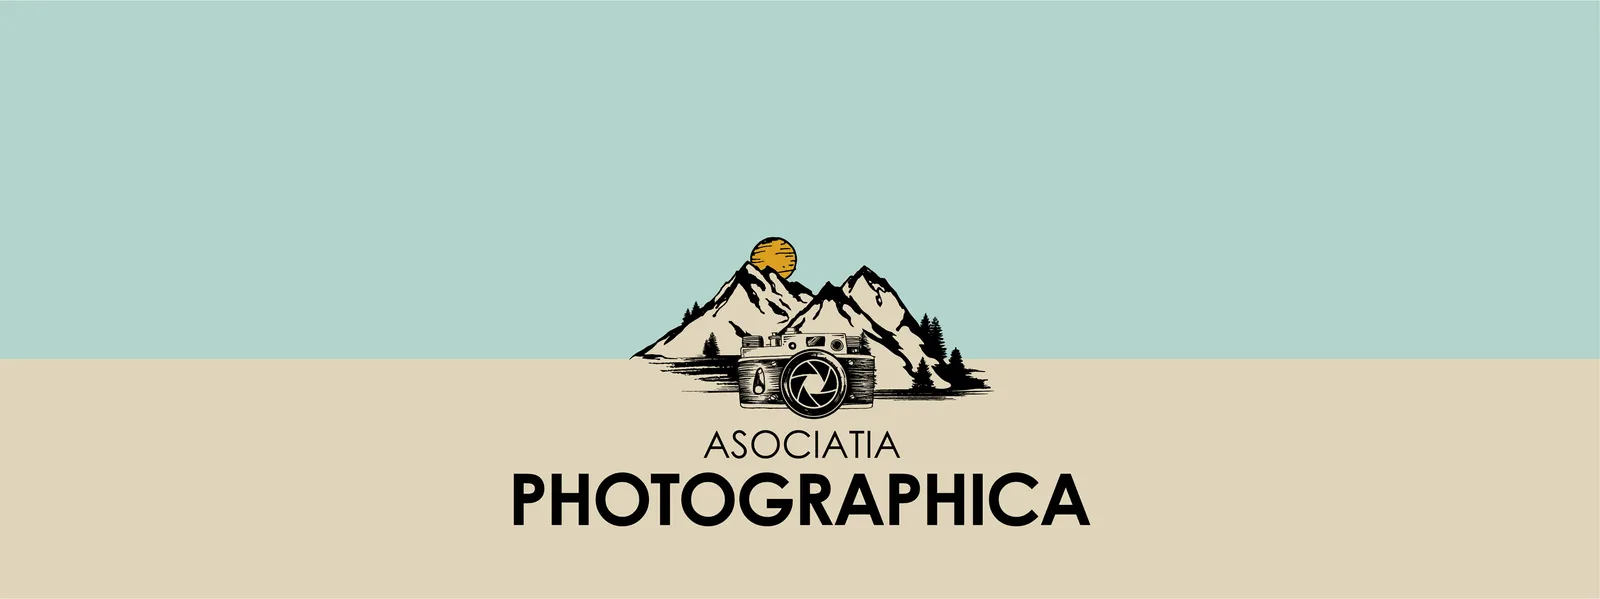 Photographica Association